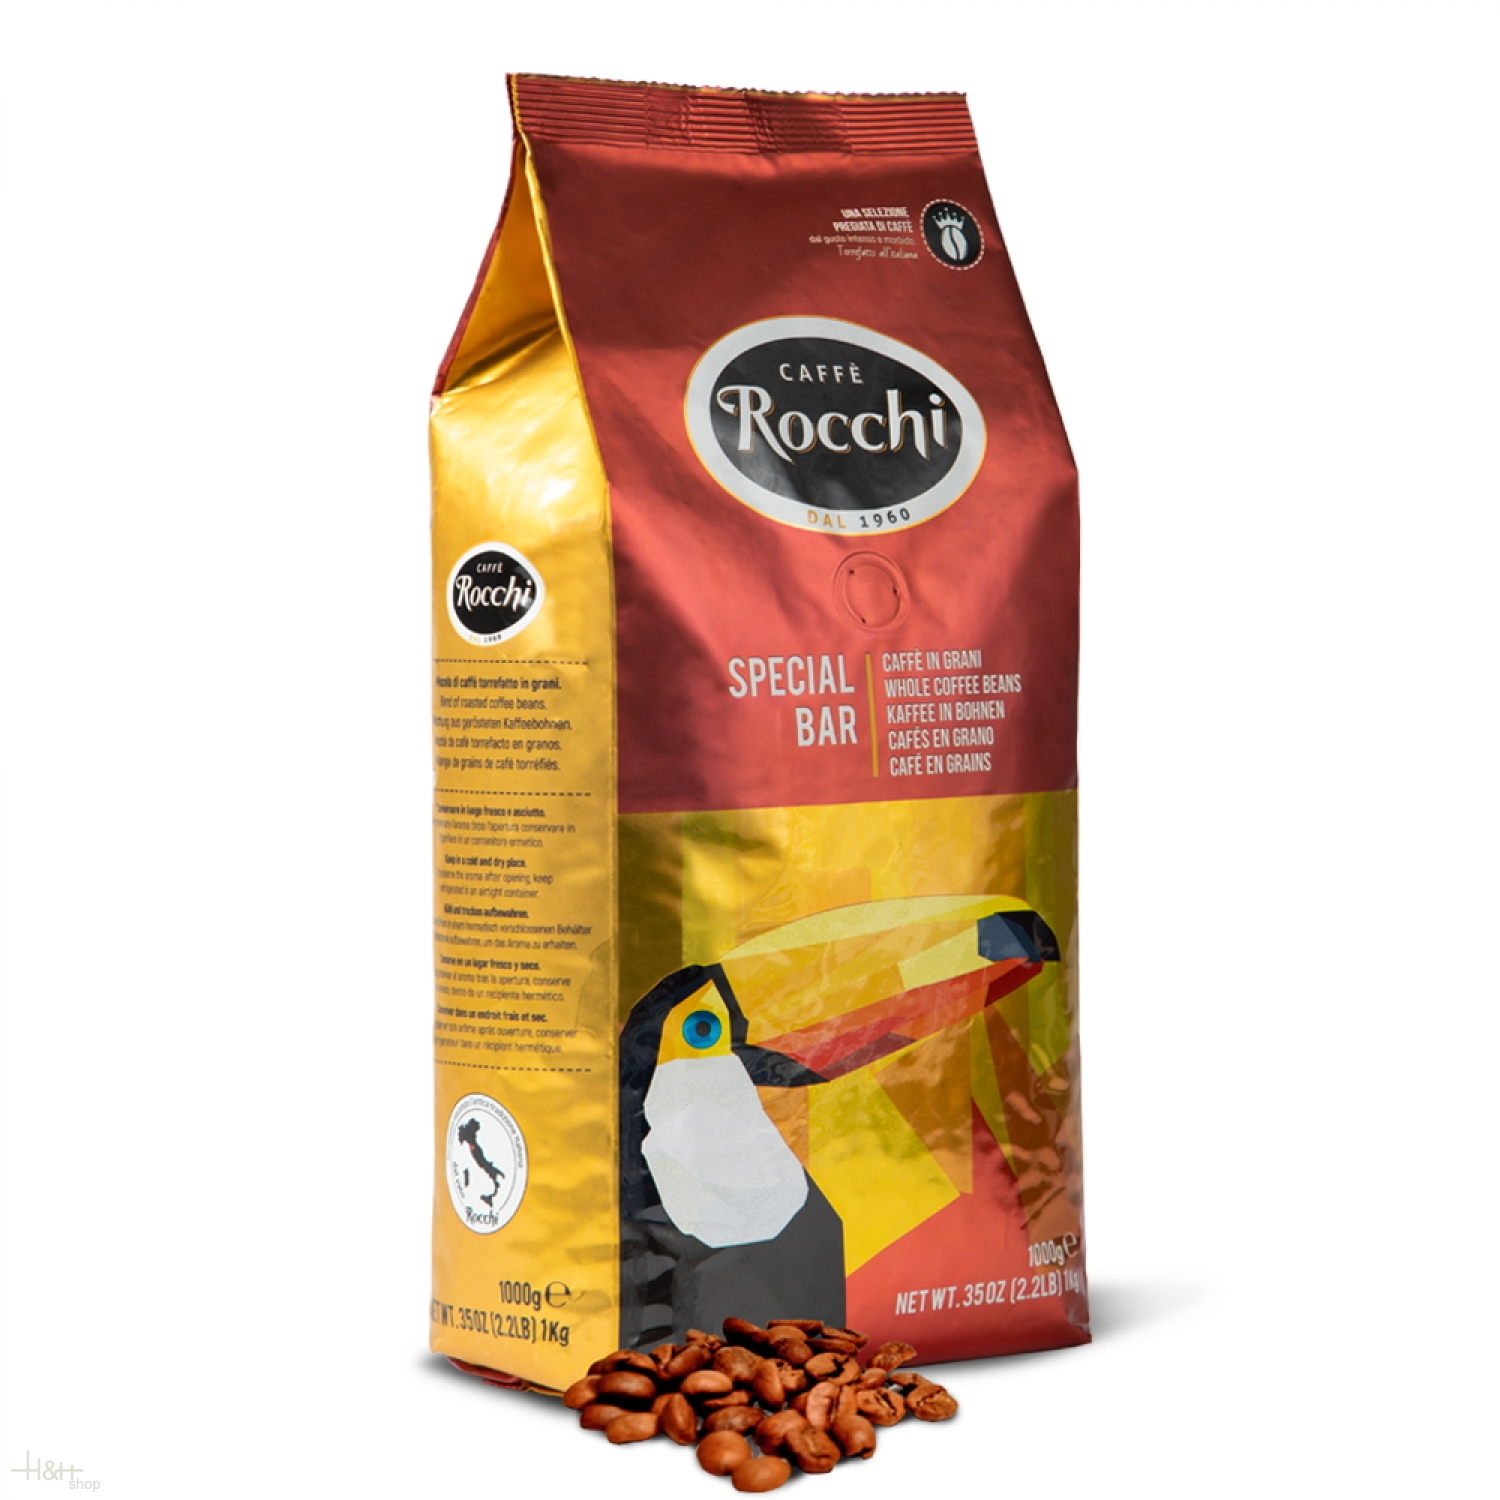 LAVAZZA CAFFE ESPRESSO Premium Arabica Italian Whole Coffee Beans 1kg 35oz